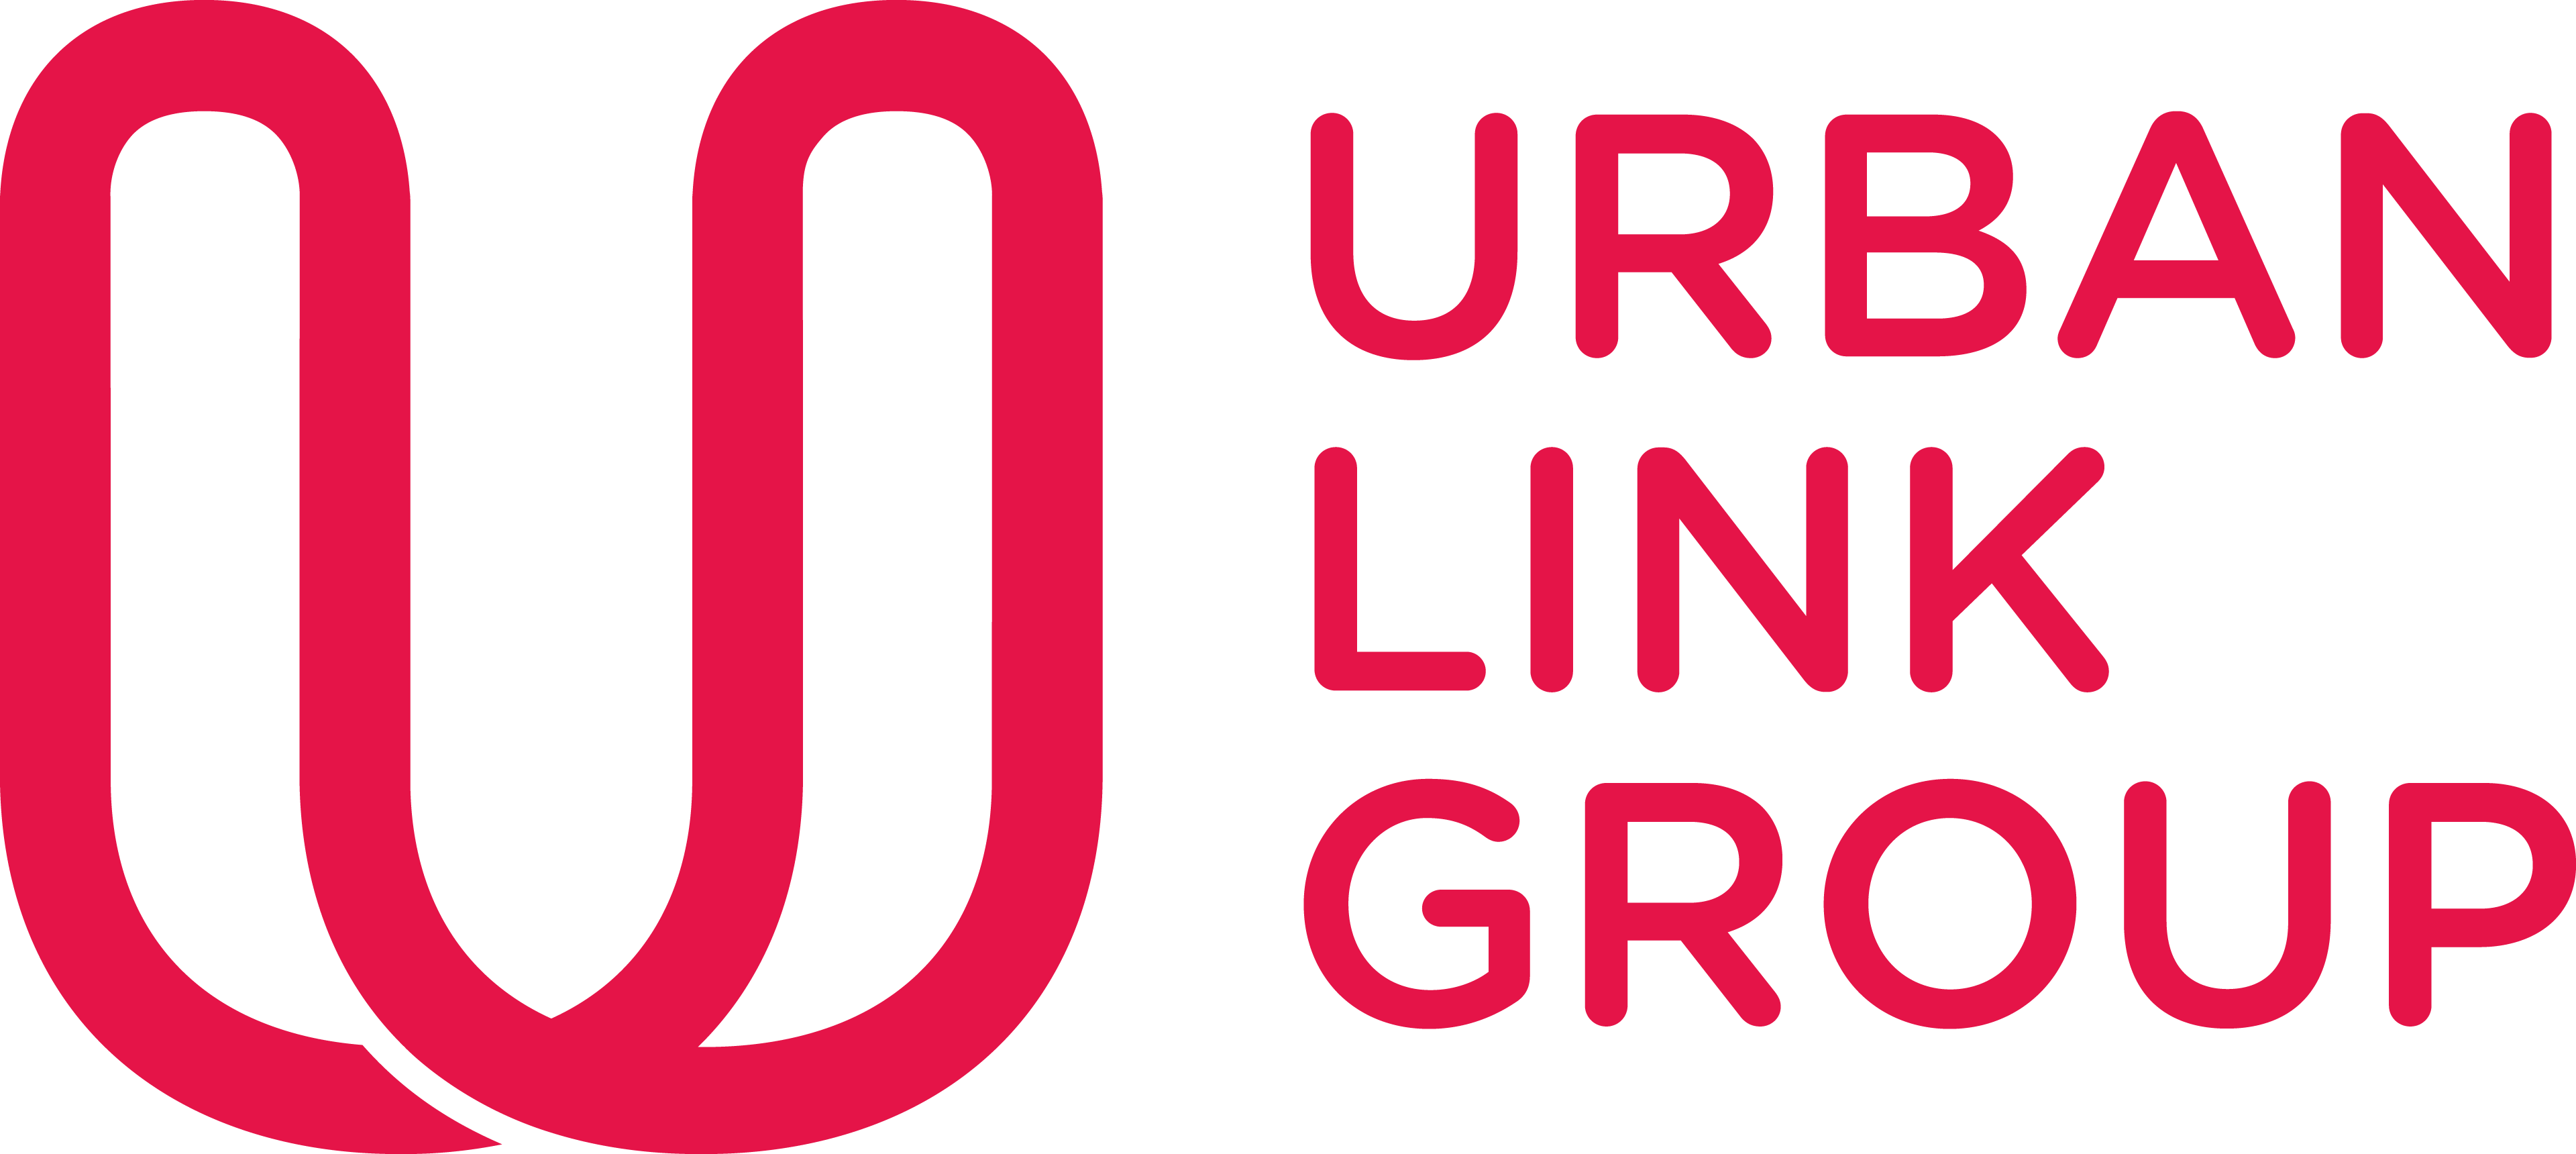 UrbanLink